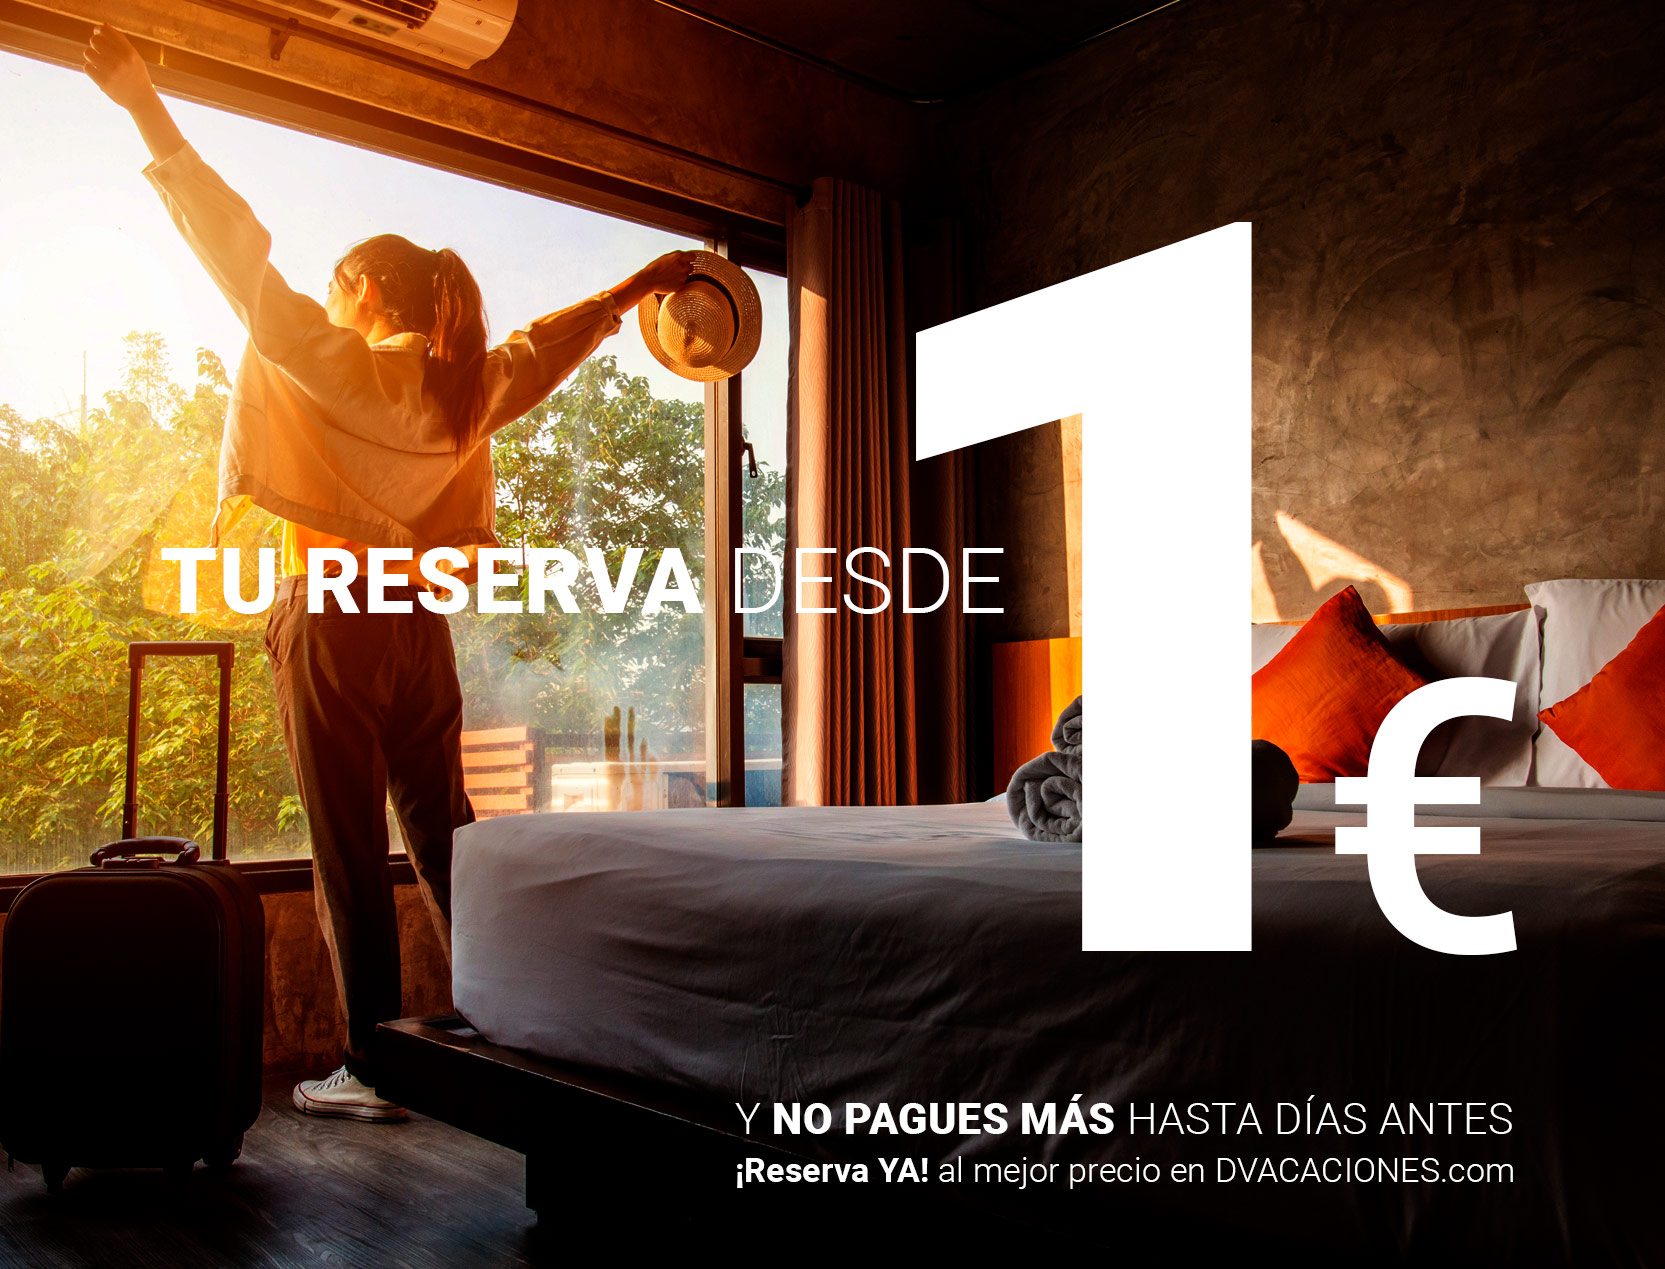 TU HOTEL DESDE 1€ - ¡Reserva YA! al mejor precio en DVACACIONES.com